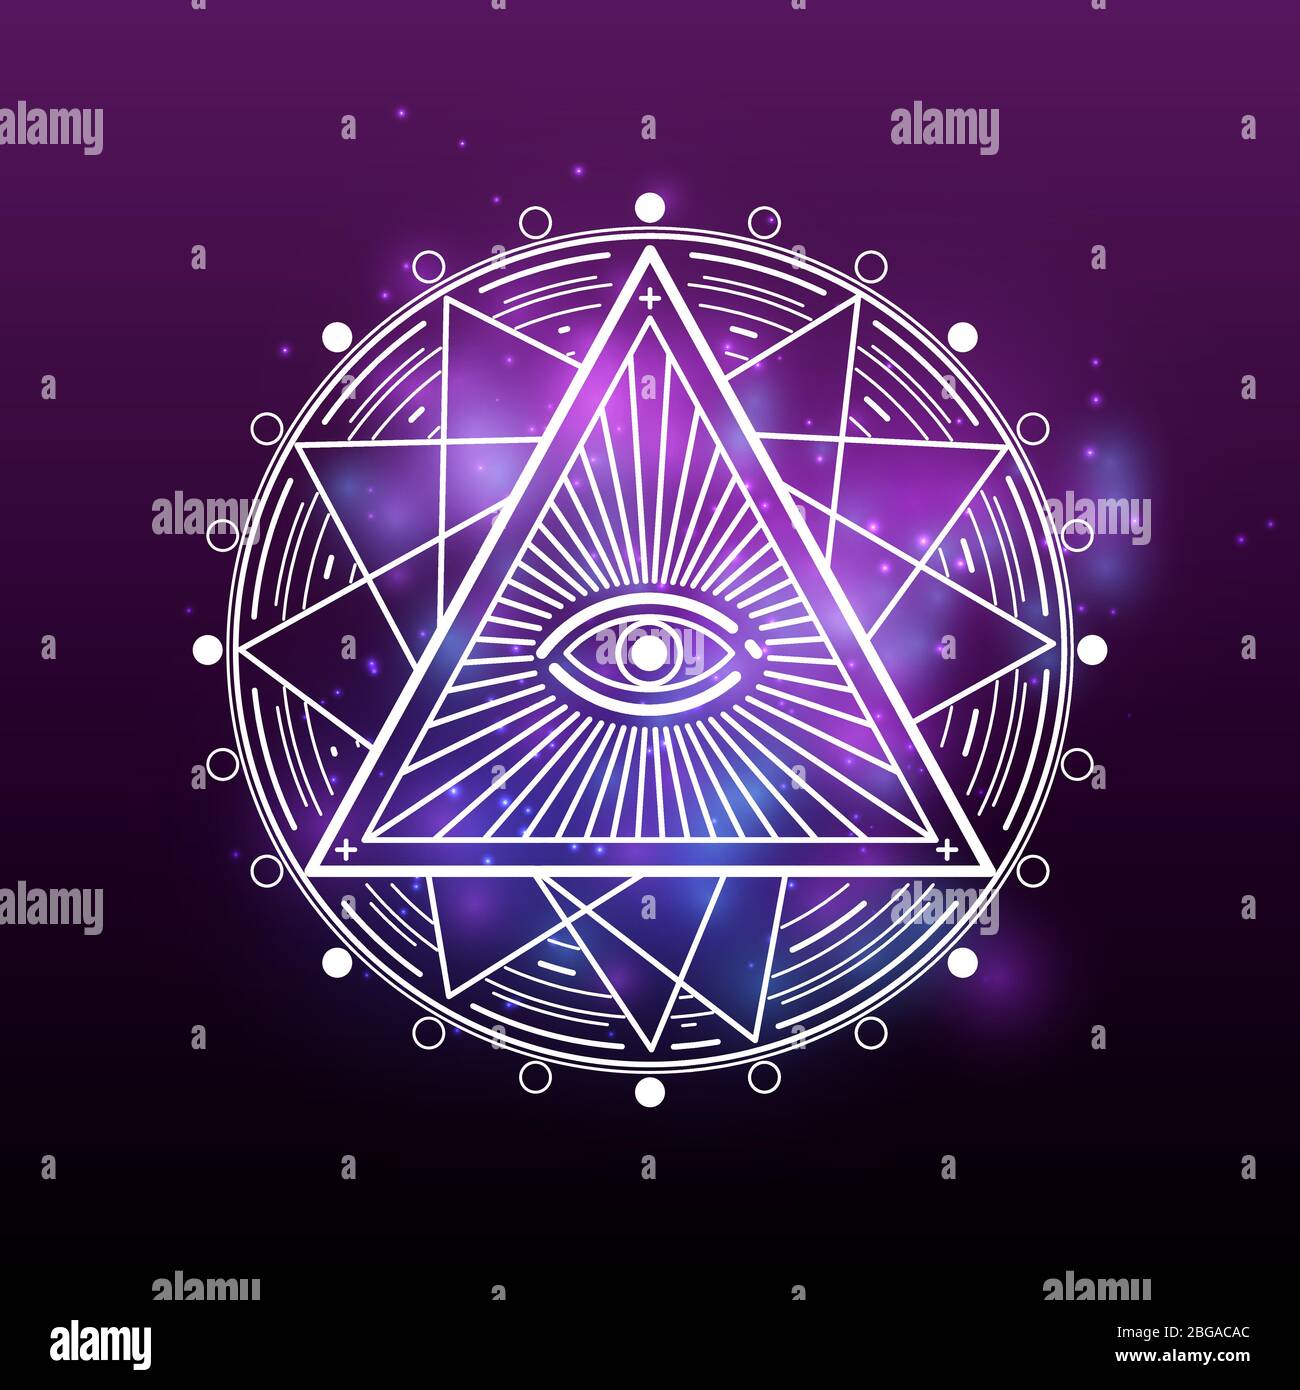 Weißes Geheimnis, okkultes, alchemy, mystisches esoterisches Zeichen auf glänzendem farbenprächtiger Hintergrund. Vektorgrafik Stock Vektor